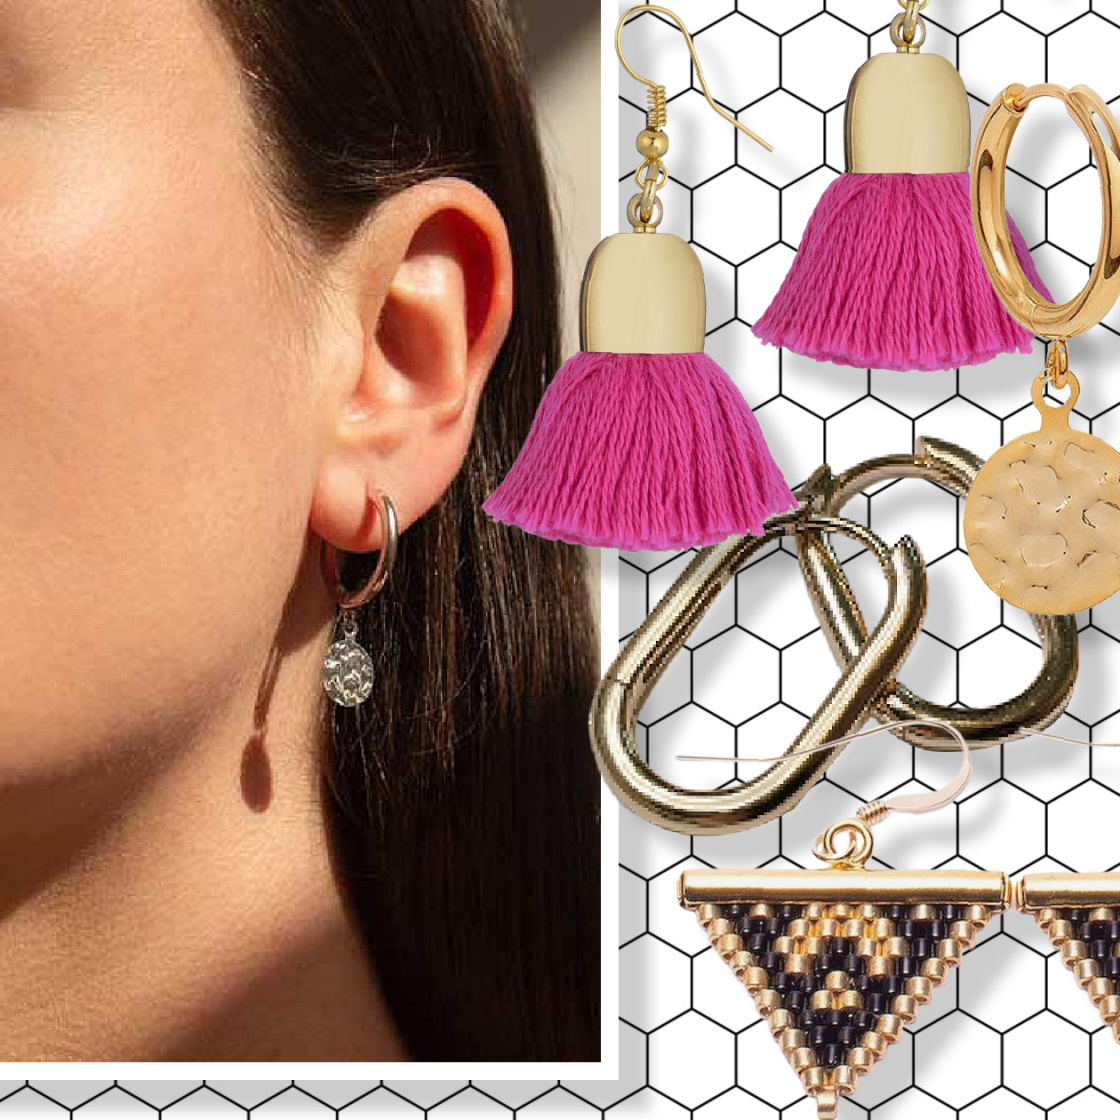 18ct Gold Filled Ladies Designer Elegant Hoop Earrings